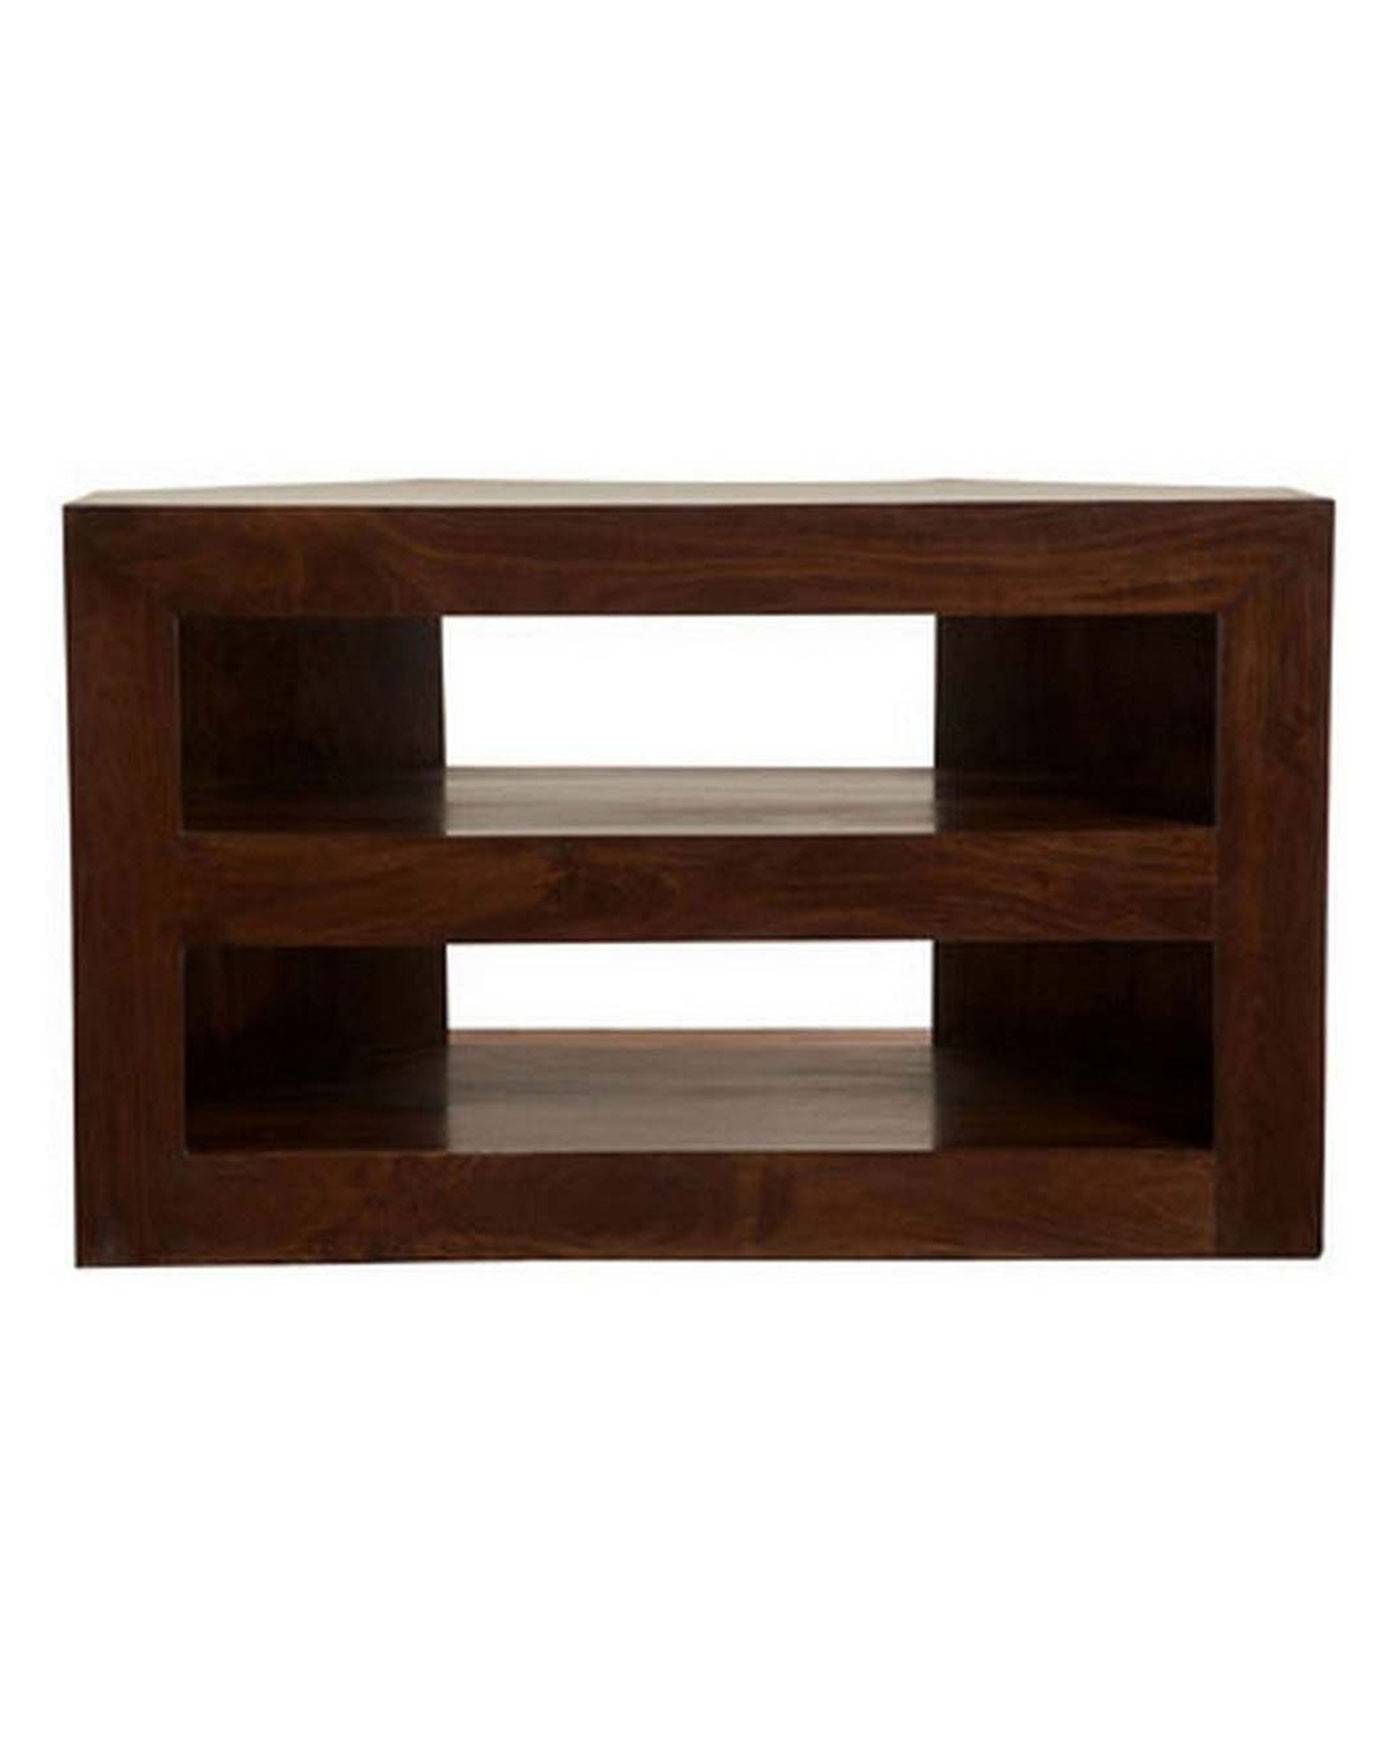 Wooden Tv Stands | Dark Wood Corner Tv Unit | Wooden Tv Cabinet With Regard To Wooden Tv Cabinets (View 4 of 15)